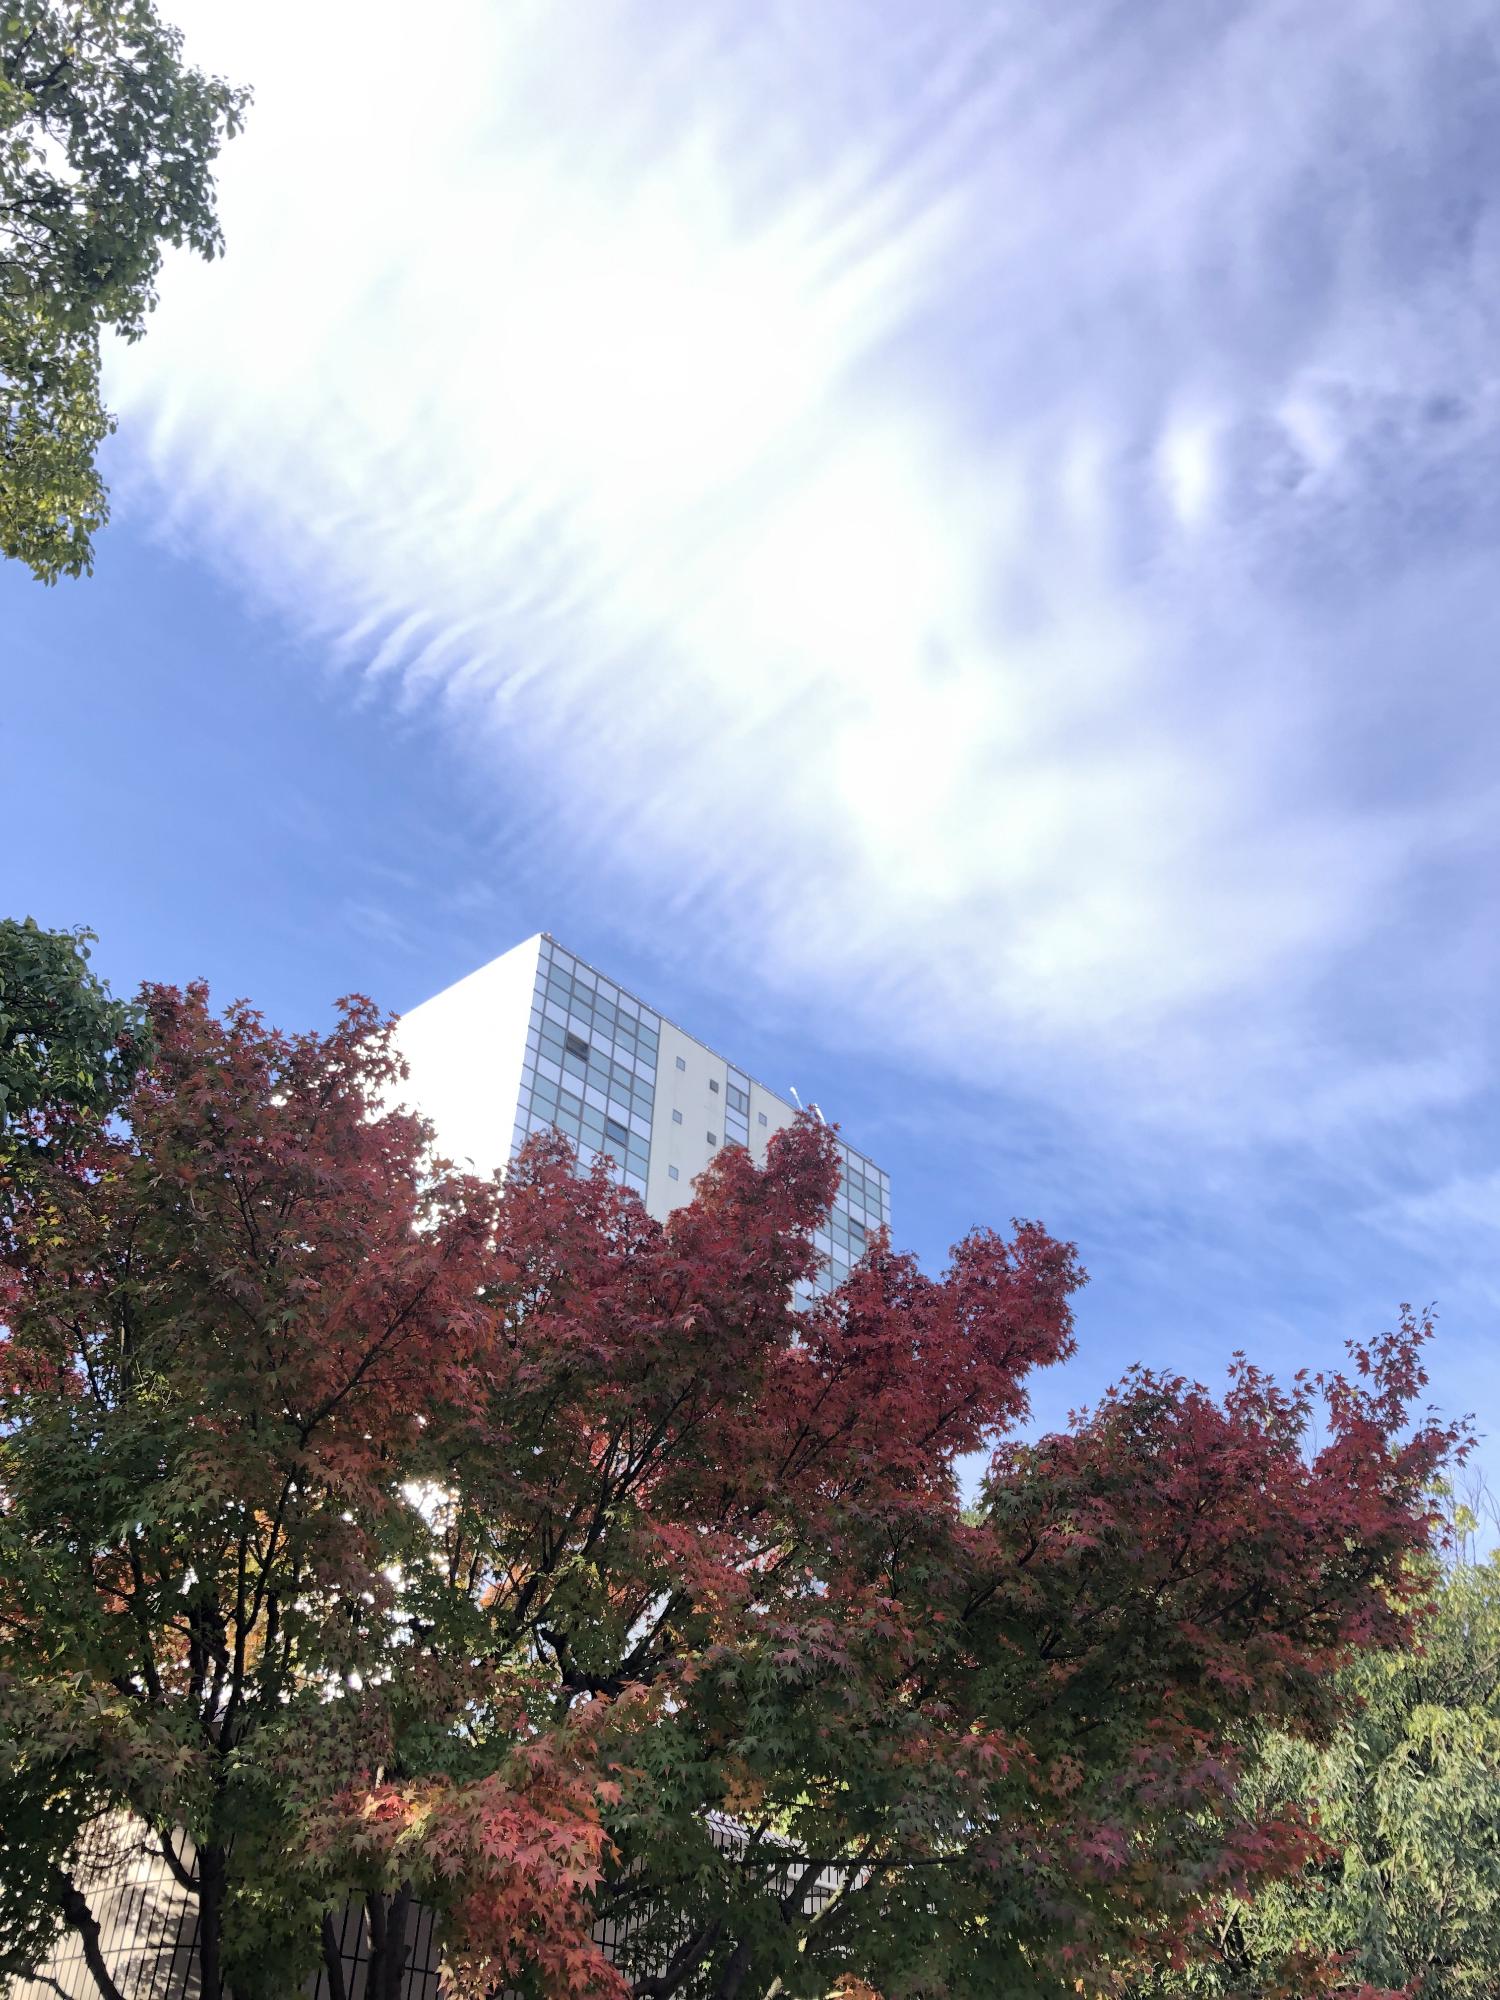 厚木市役所第二庁舎をバックに撮影された紅葉し始めの樹木と秋らしい雲